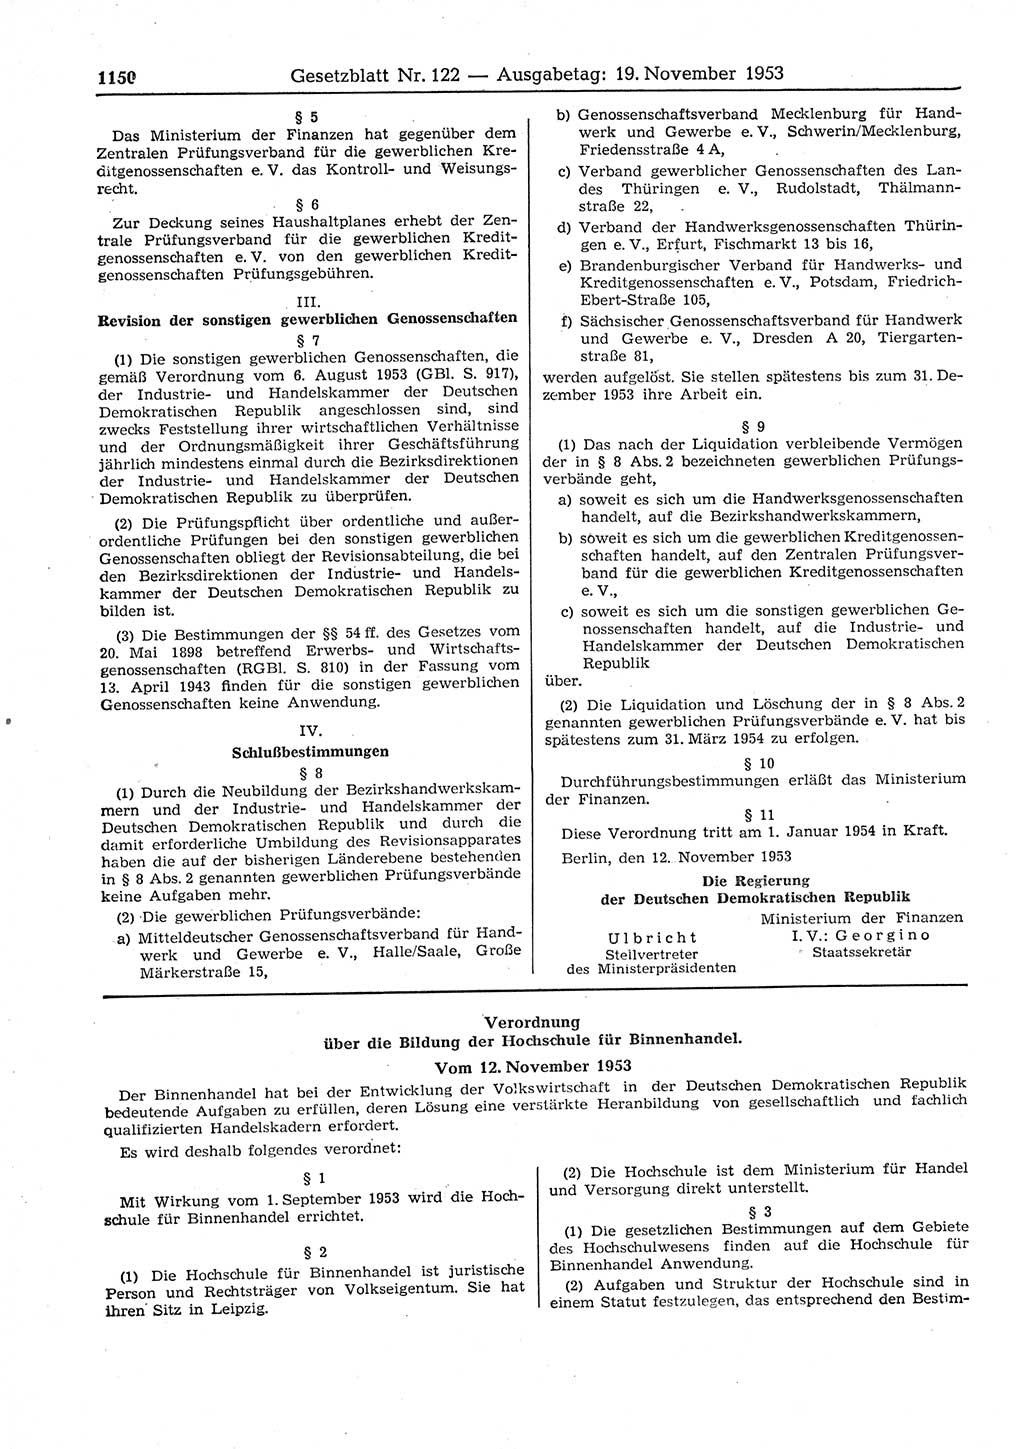 Gesetzblatt (GBl.) der Deutschen Demokratischen Republik (DDR) 1953, Seite 1150 (GBl. DDR 1953, S. 1150)